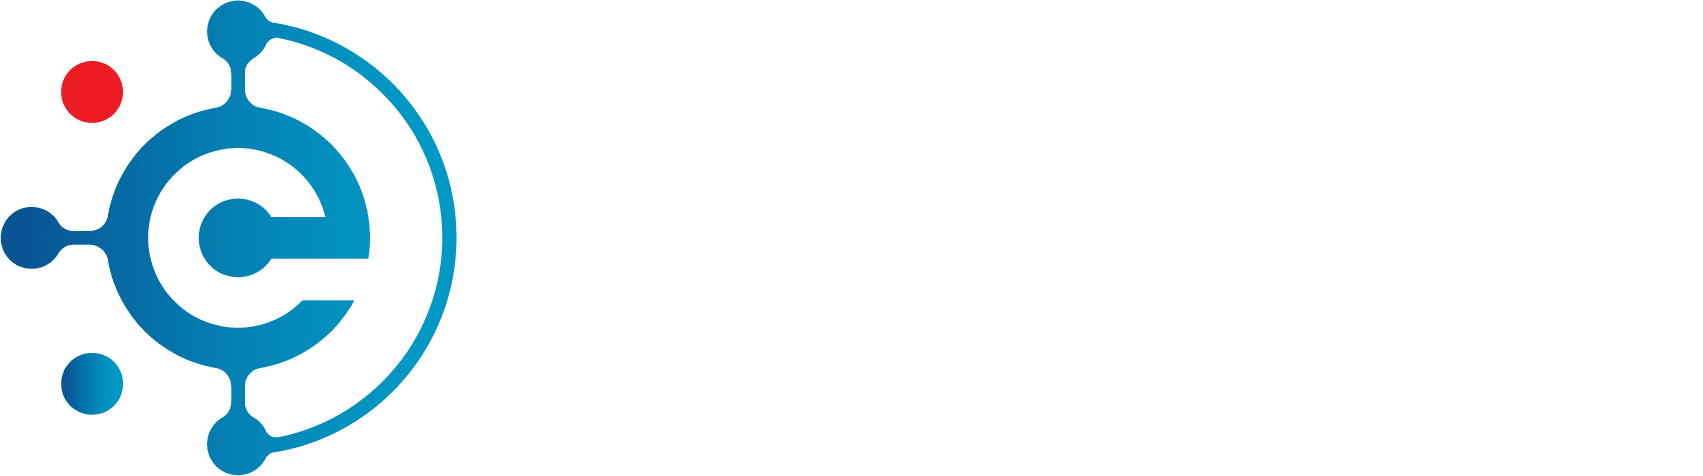 E-MAAN DIGITAL